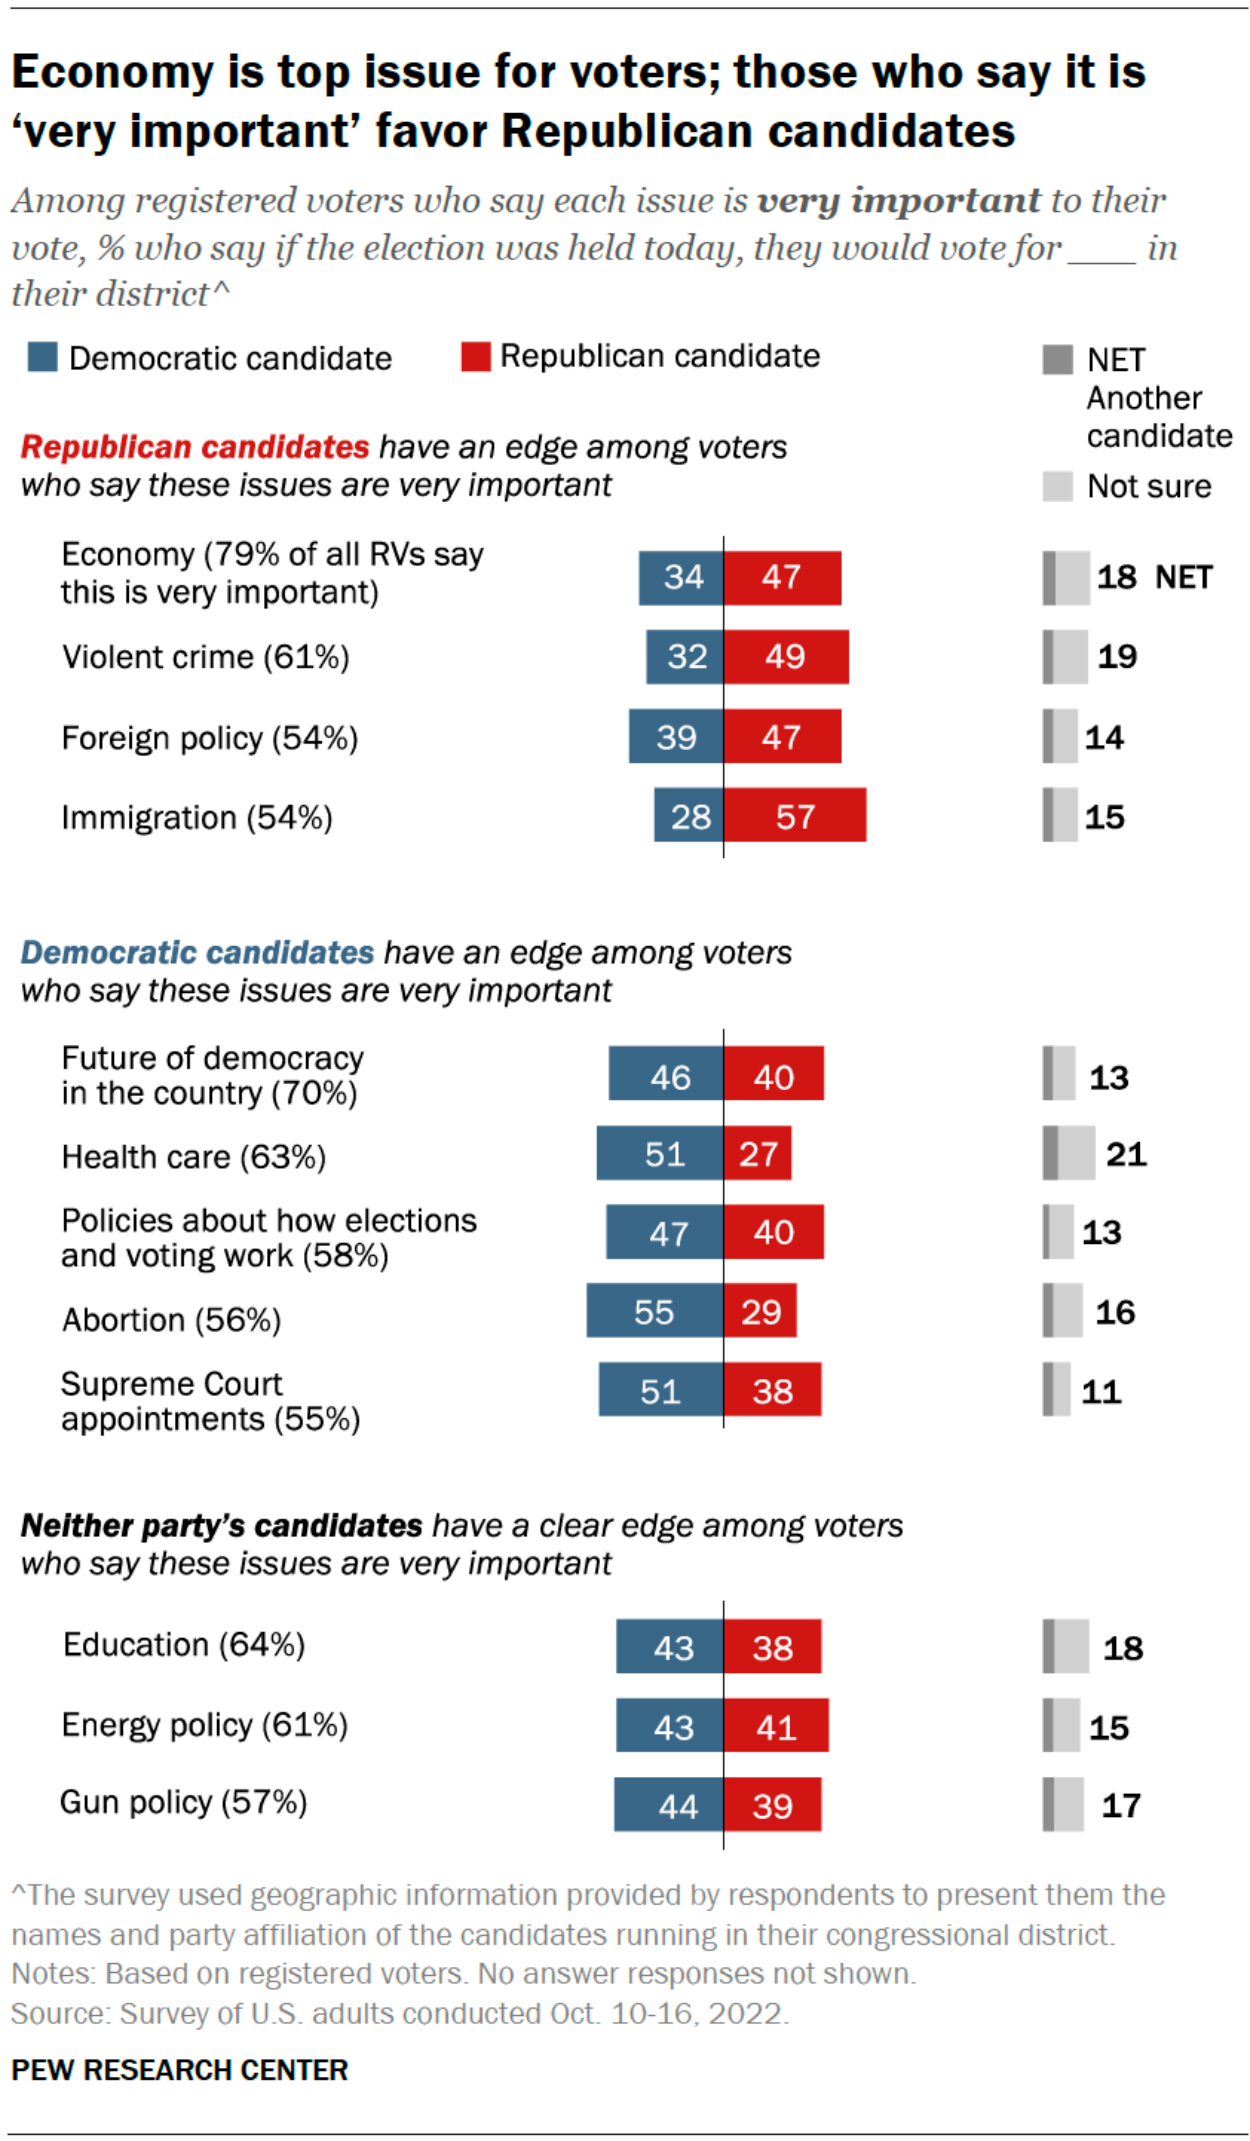 El gráfico refleja los temas más importantes para los votantes para apoyar candidatos y la economía es prioritaria.